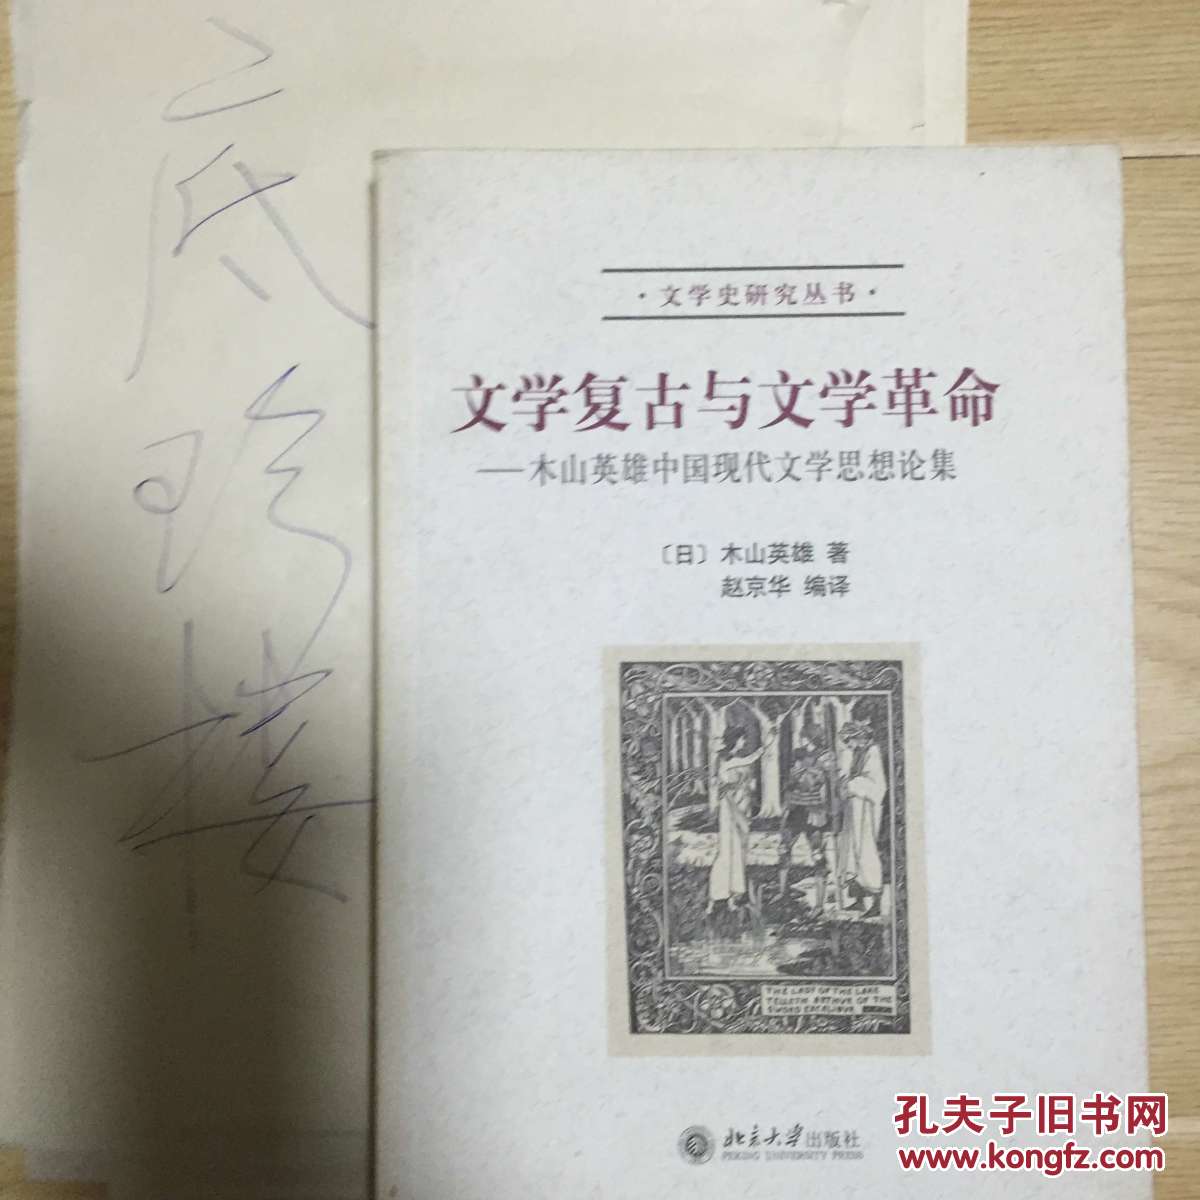 【图】文学复古与文学革命:本山英雄中国现代